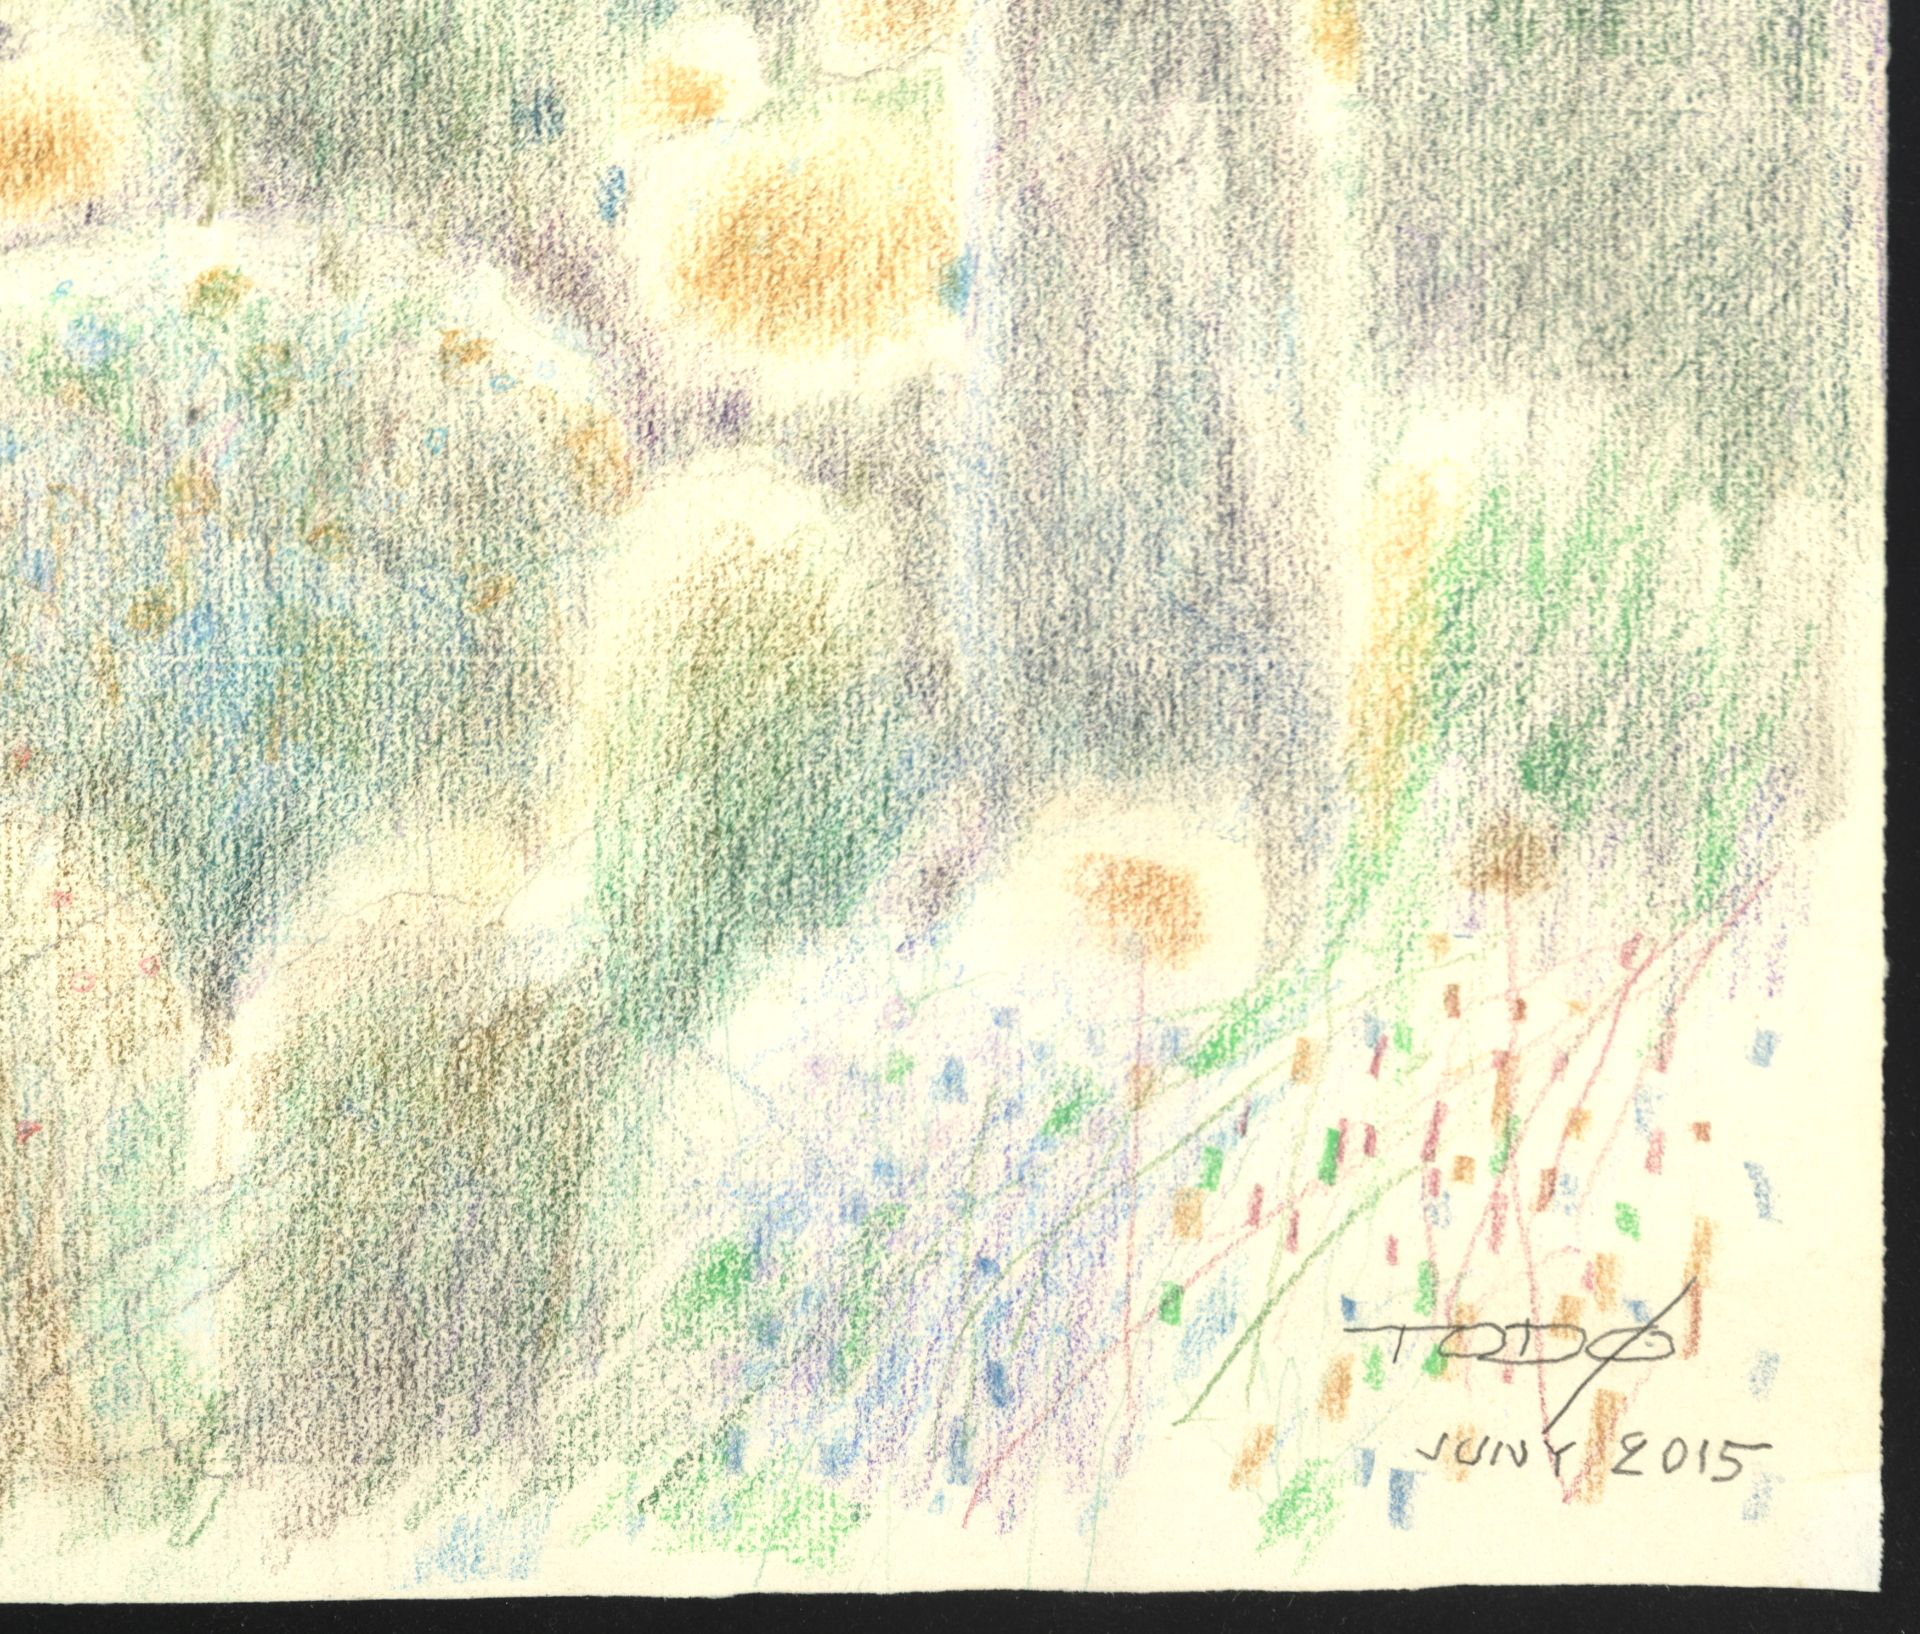 Semyon, 2015 pastel on paper - Image 2 of 3